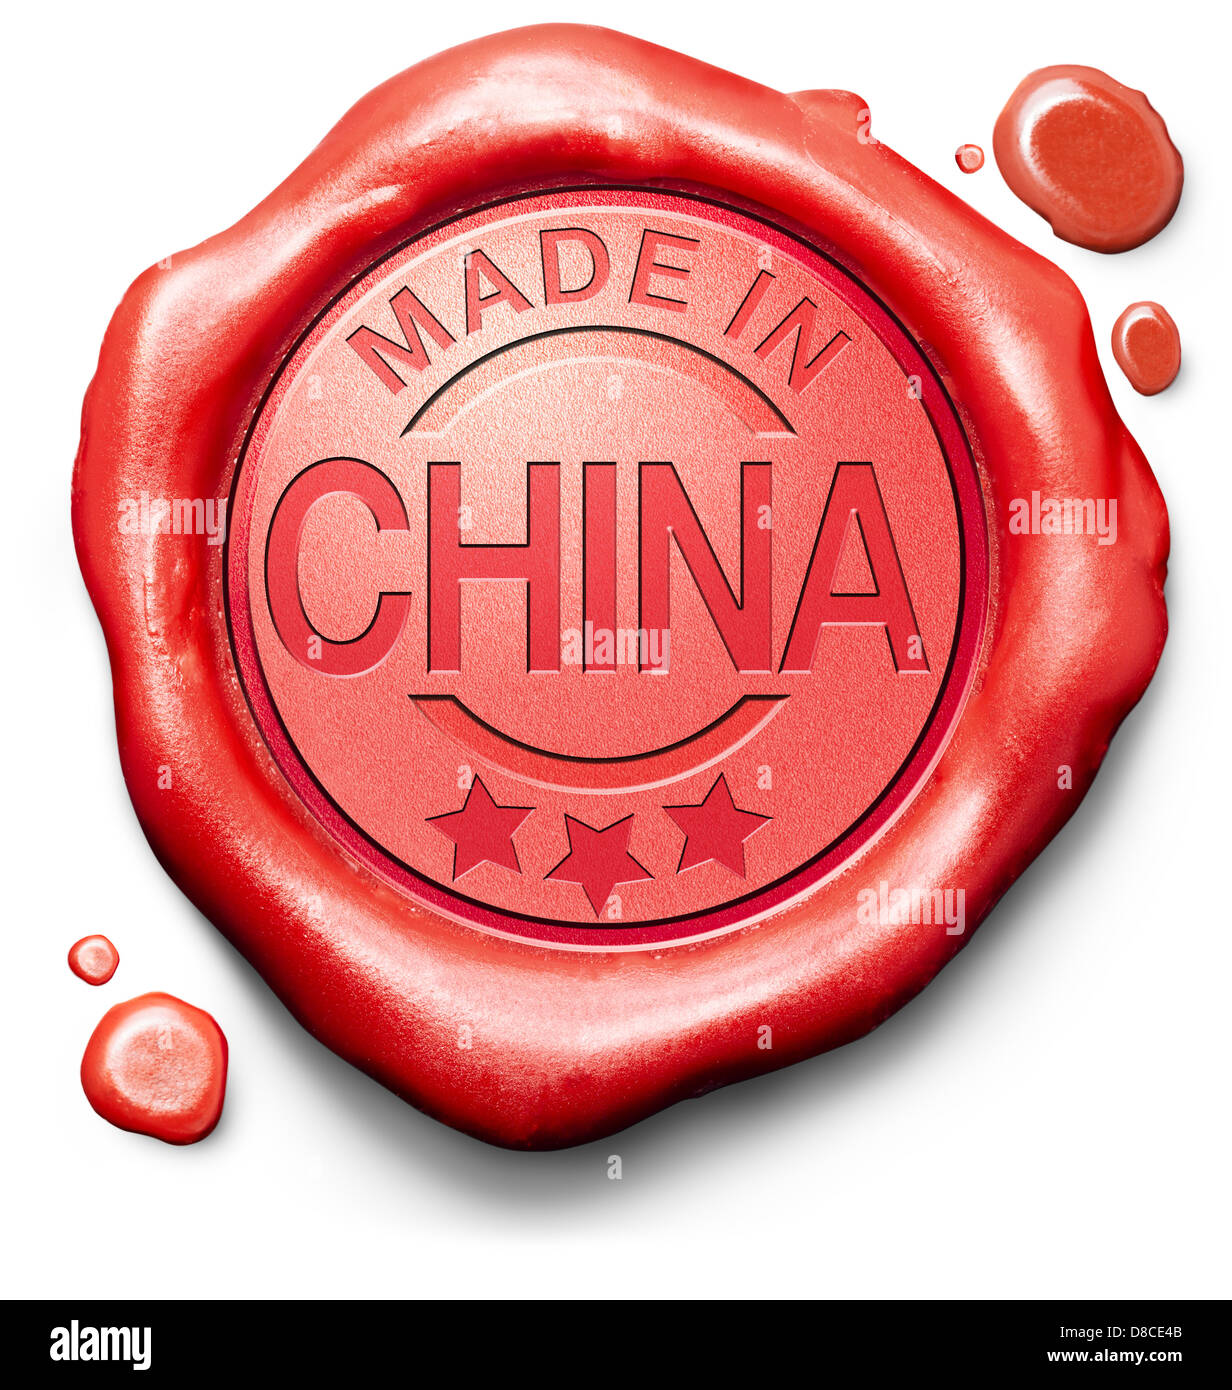 hergestellt in China Originalprodukt kaufen lokale kaufen authentische chinesische Qualität Label rote Wachssiegel Stempel Stockfoto